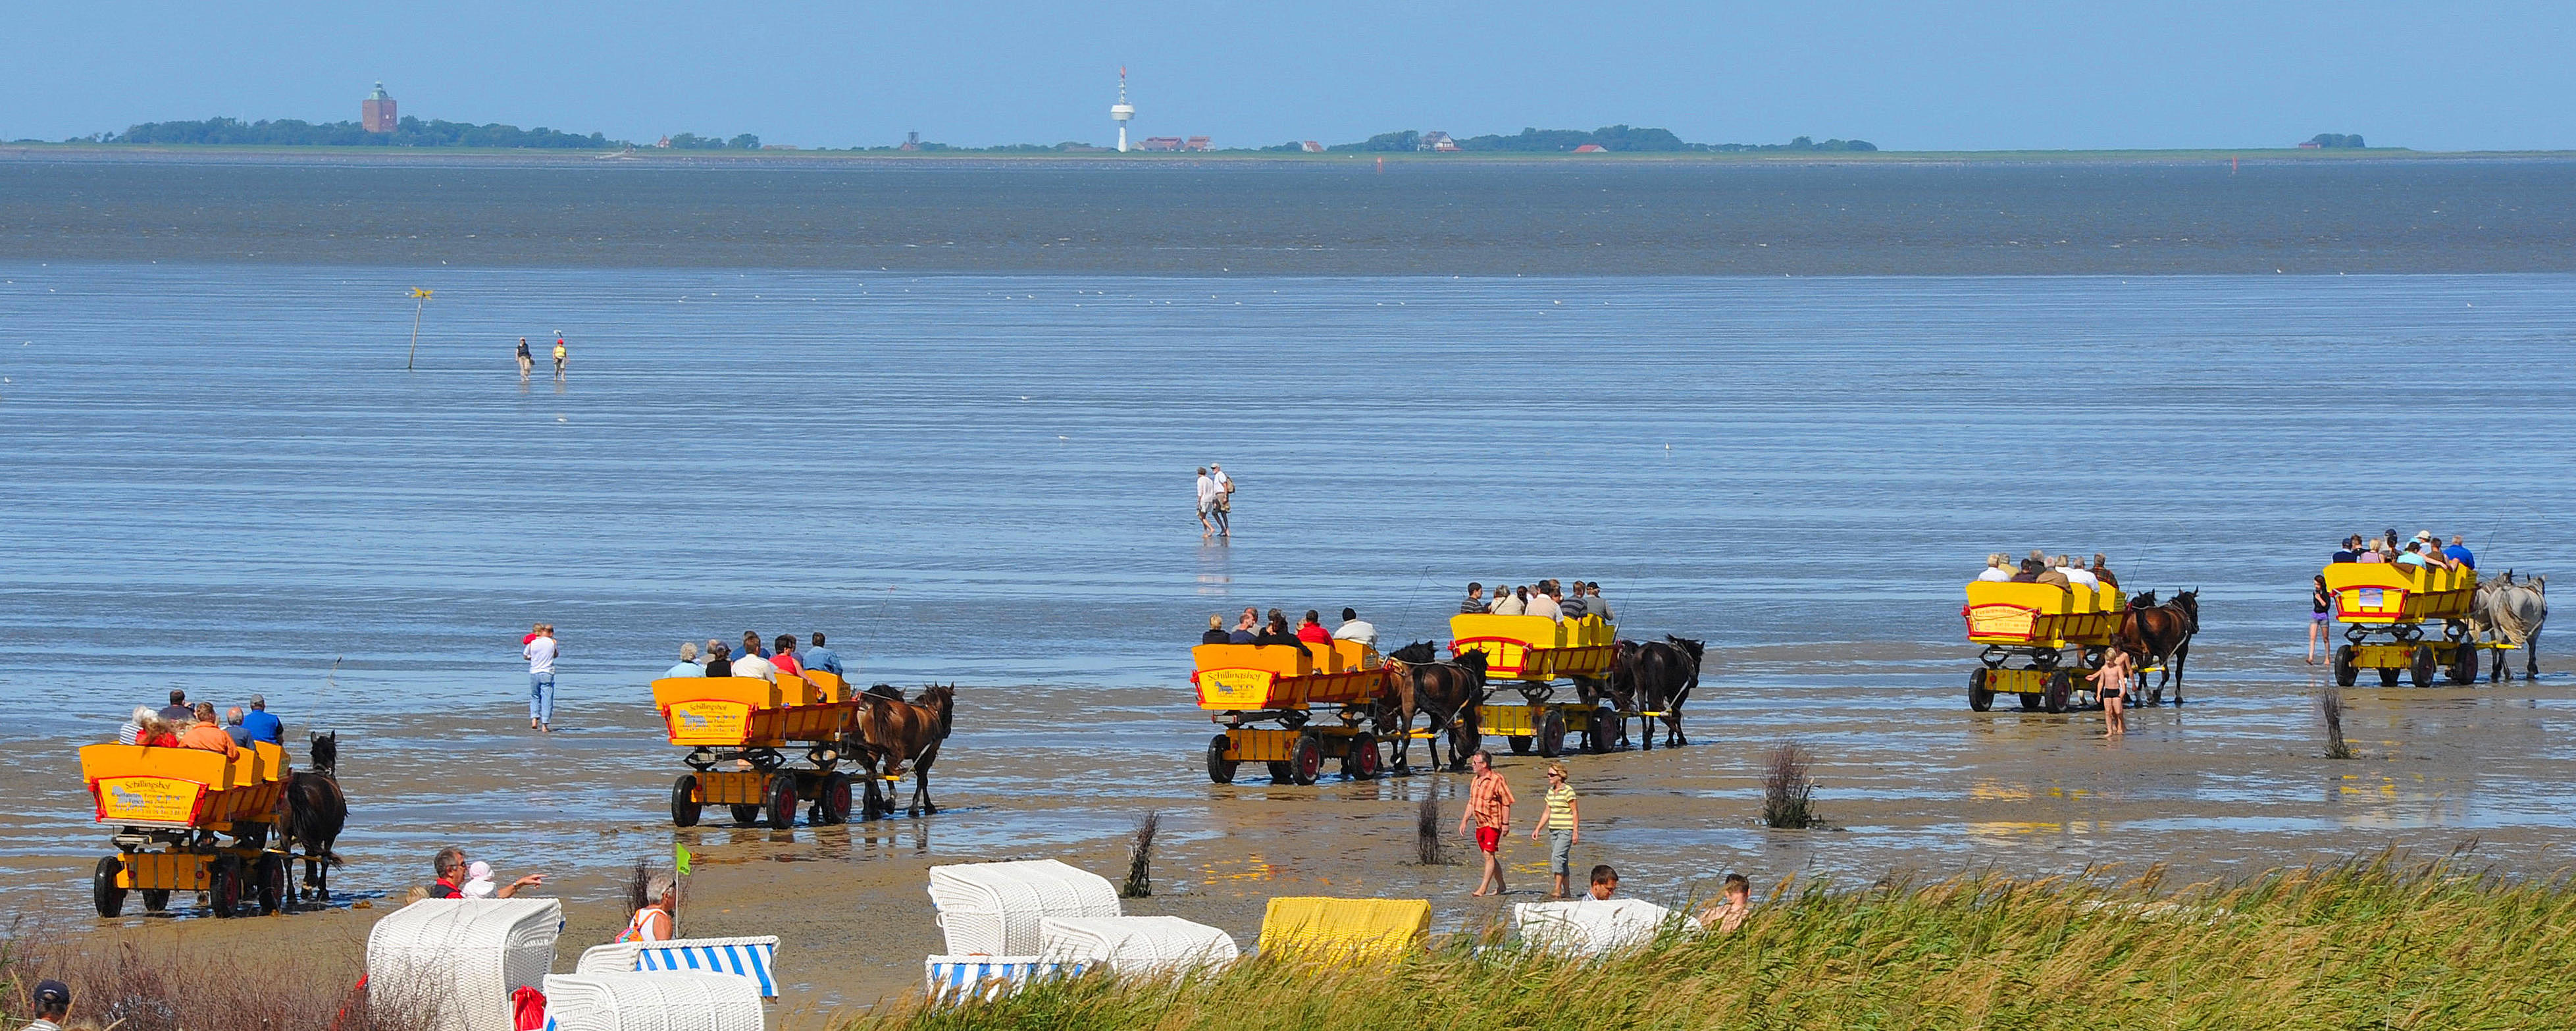 Mehrere Wattwagen, welche von Pferden, durch das Wattenmeer gezogen werde.